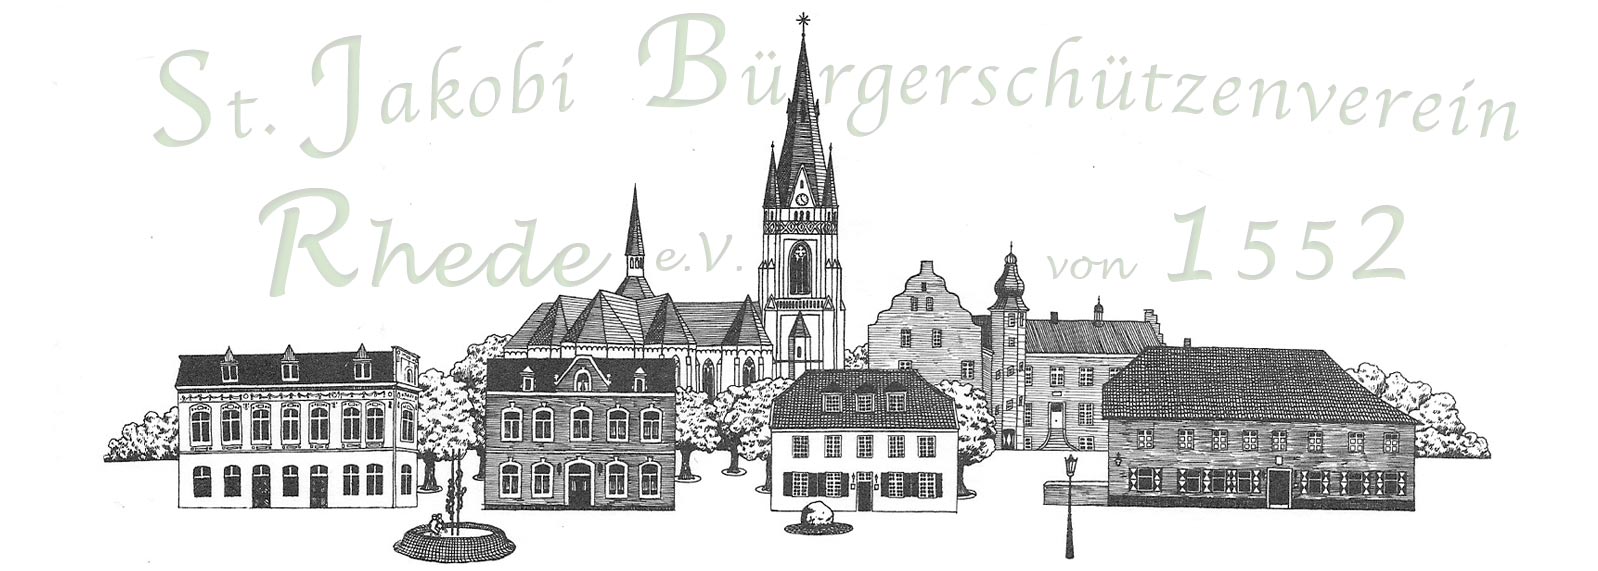 St. Jakobi Bürgerschützenverein Rhede e.V. von 1552